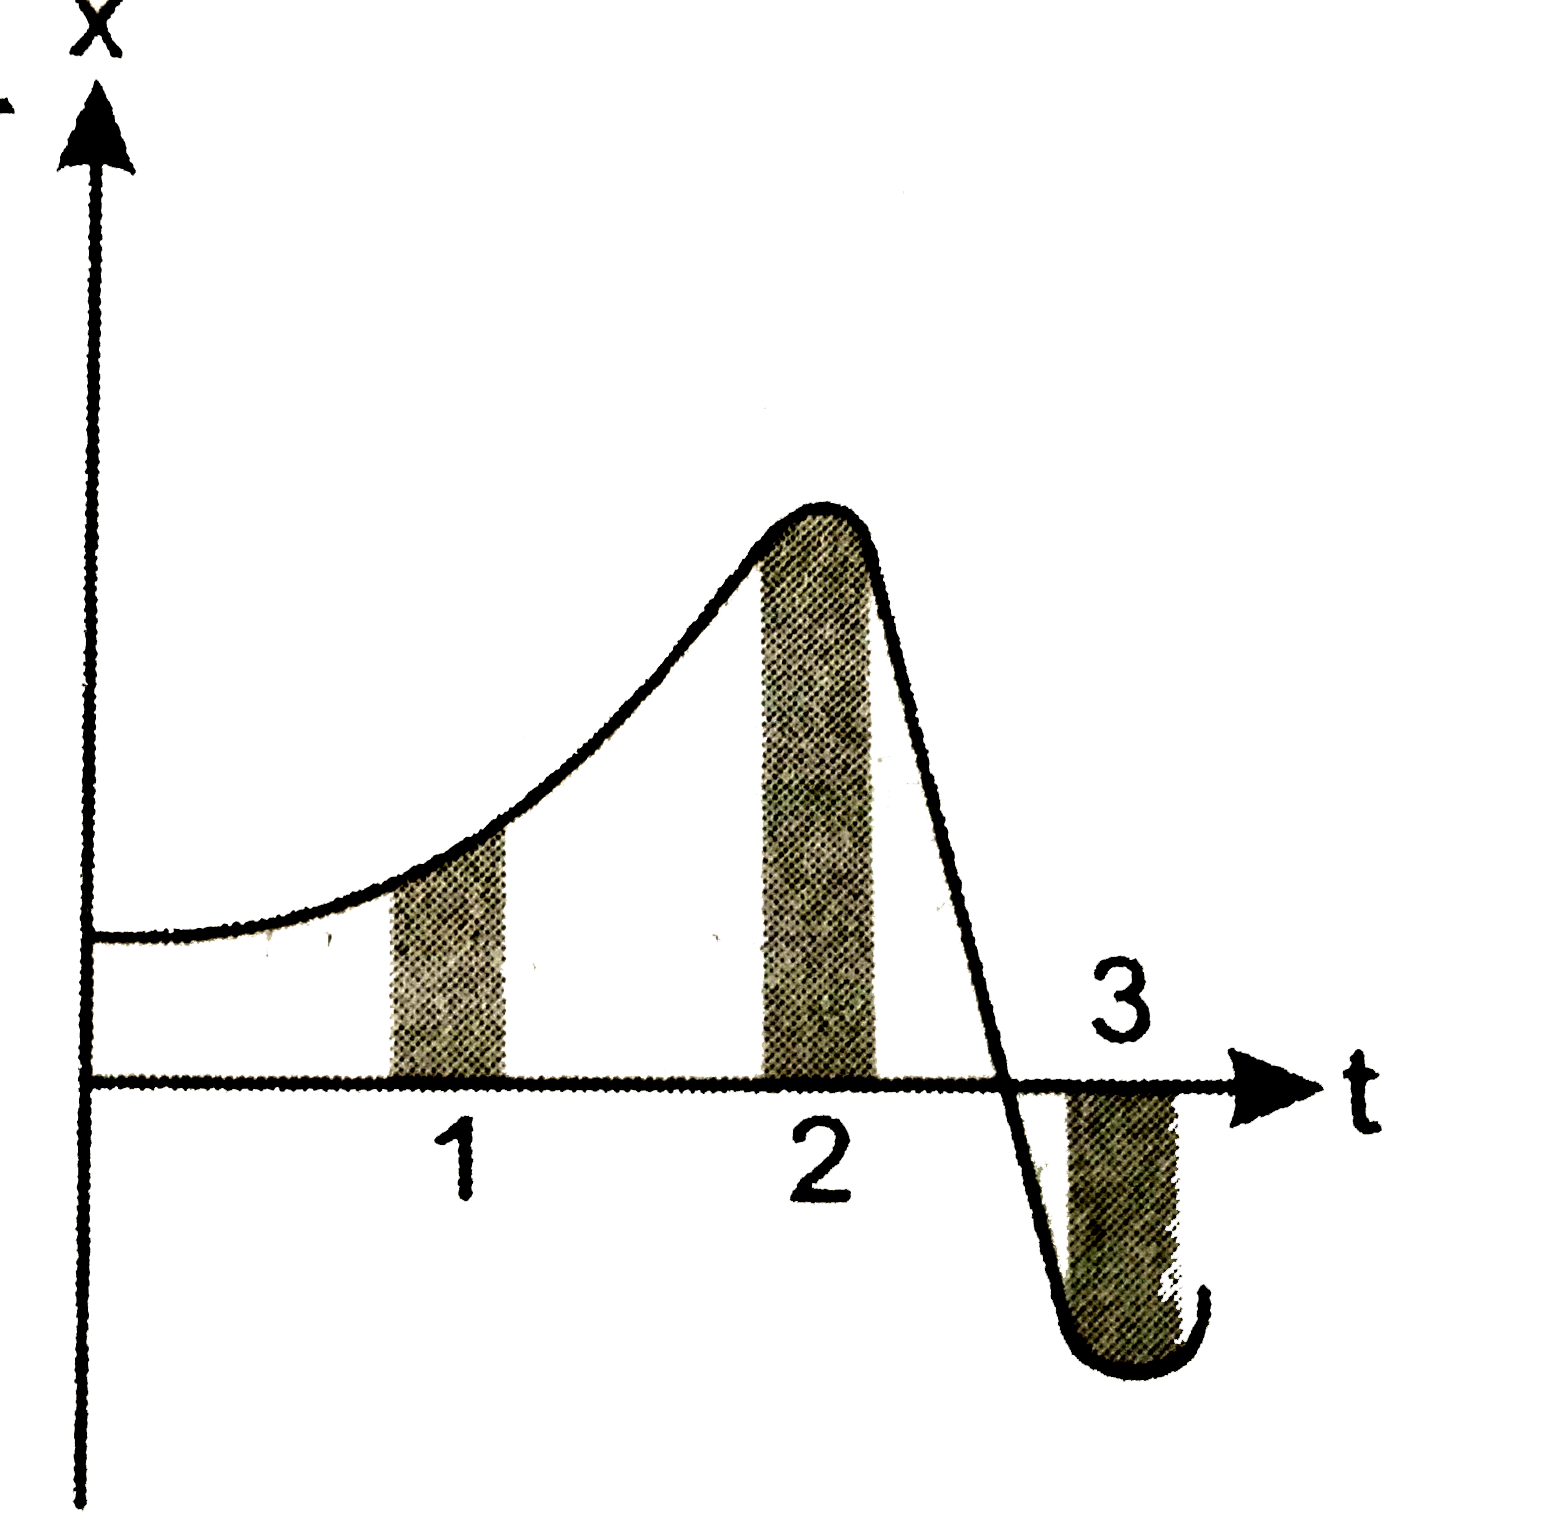 चित्र किसी कण की एकविमीय गति का x-t ग्राफ दर्शाता है। इसमें तीन समान अन्तराल दिखाये गये है। किस अन्तराल में औसत चाल अधिकतम है और किसमें न्यूनतम है? प्रत्येक अन्तराल के लिए औसत वेग का चिन्ह बताइए।